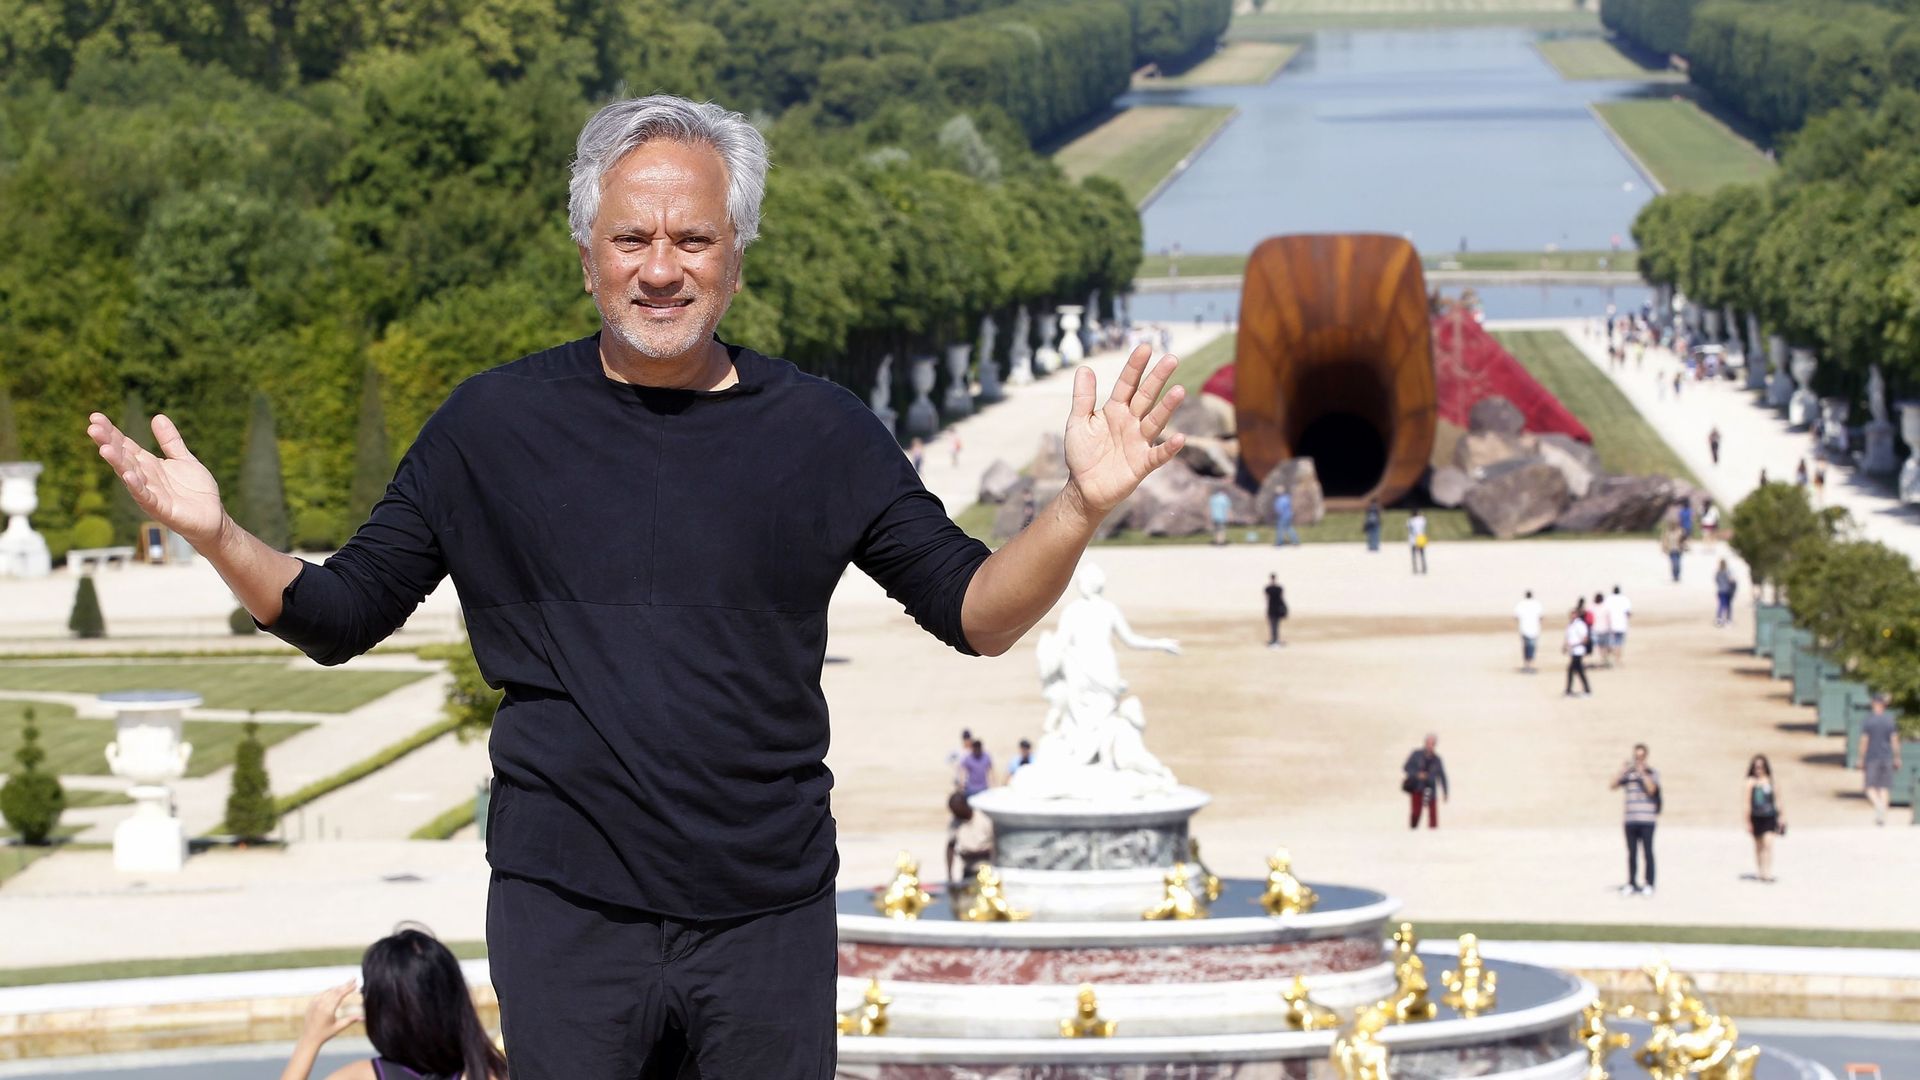 L’artiste contemporain britannique d’origine indienne Anish Kapoor pose devant son œuvre nommée 'Dirty Corner' lors du vernissage de l’exposition de ses œuvres dans les jardins du Château de Versailles, le 5 juin 2015, à Versailles, France.
